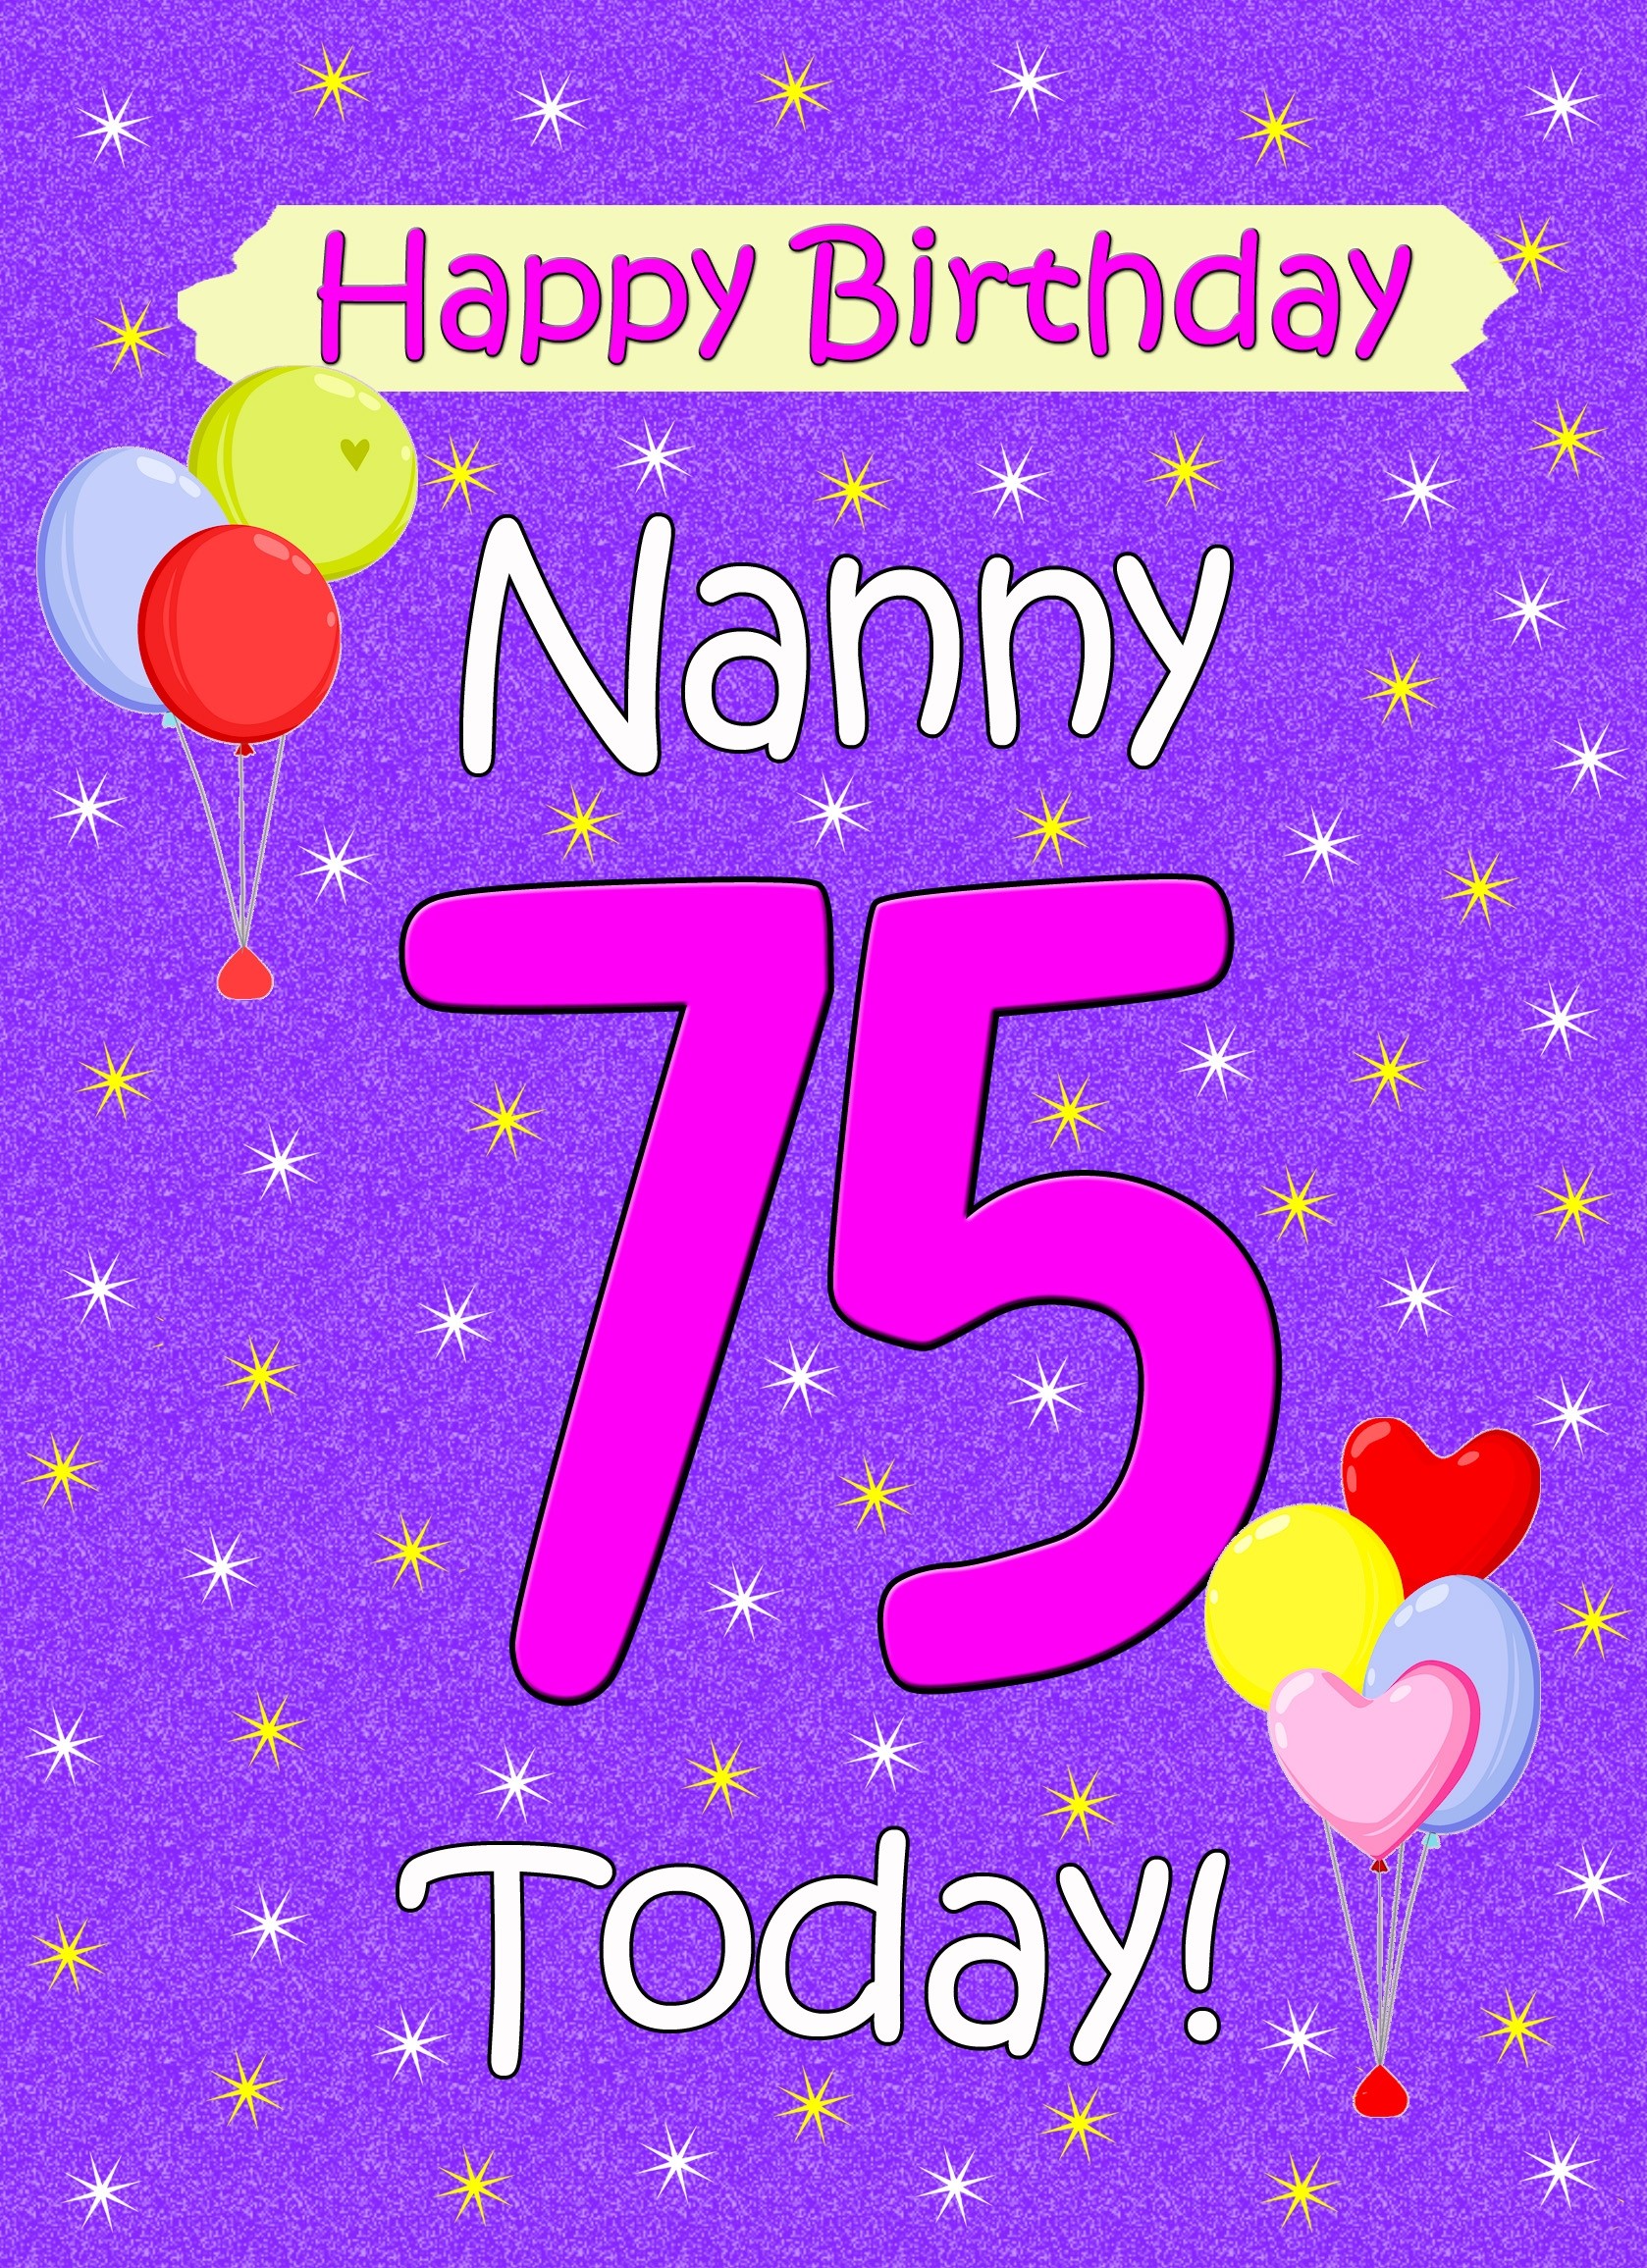 Nanny 75th Birthday Card (Lilac)